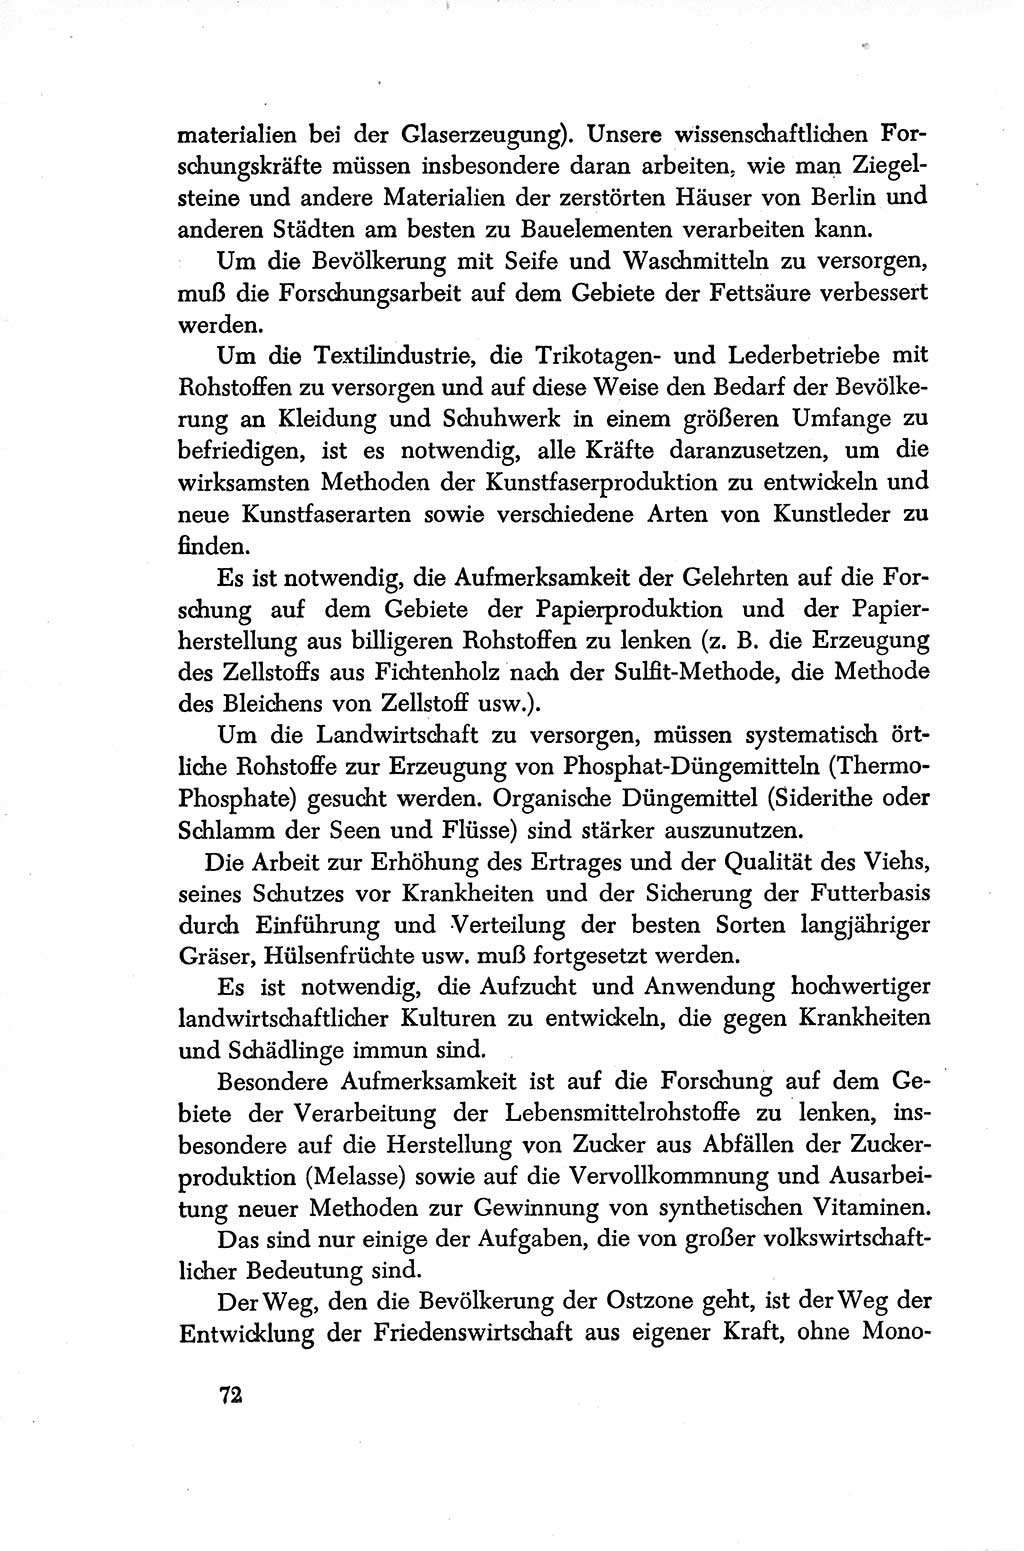 Dokumente der Sozialistischen Einheitspartei Deutschlands (SED) [Sowjetische Besatzungszone (SBZ) Deutschlands/Deutsche Demokratische Republik (DDR)] 1948-1950, Seite 72 (Dok. SED SBZ Dtl. DDR 1948-1950, S. 72)